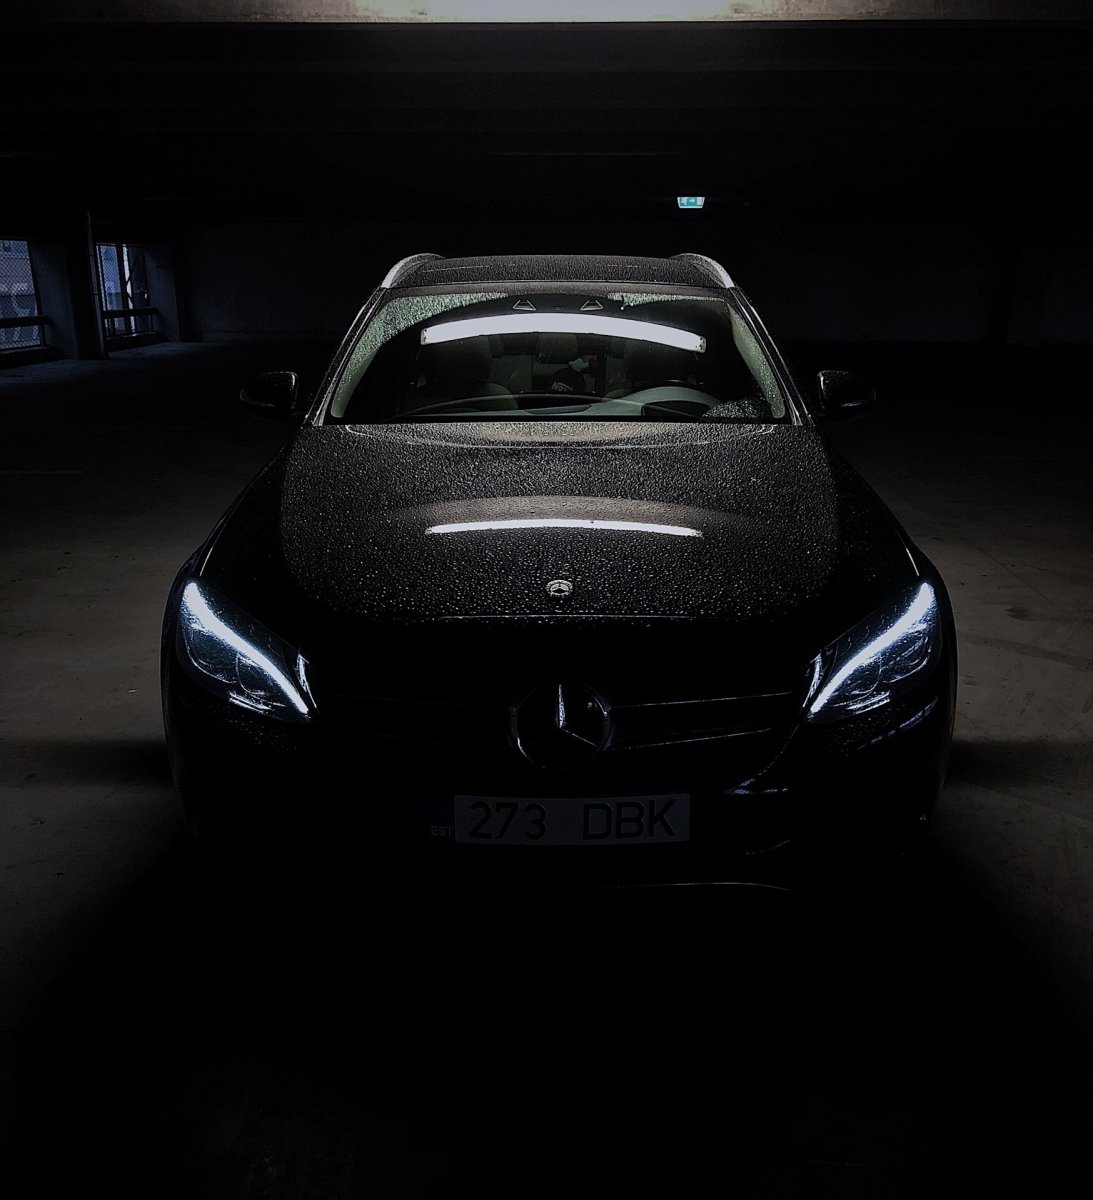 Машина в темноте